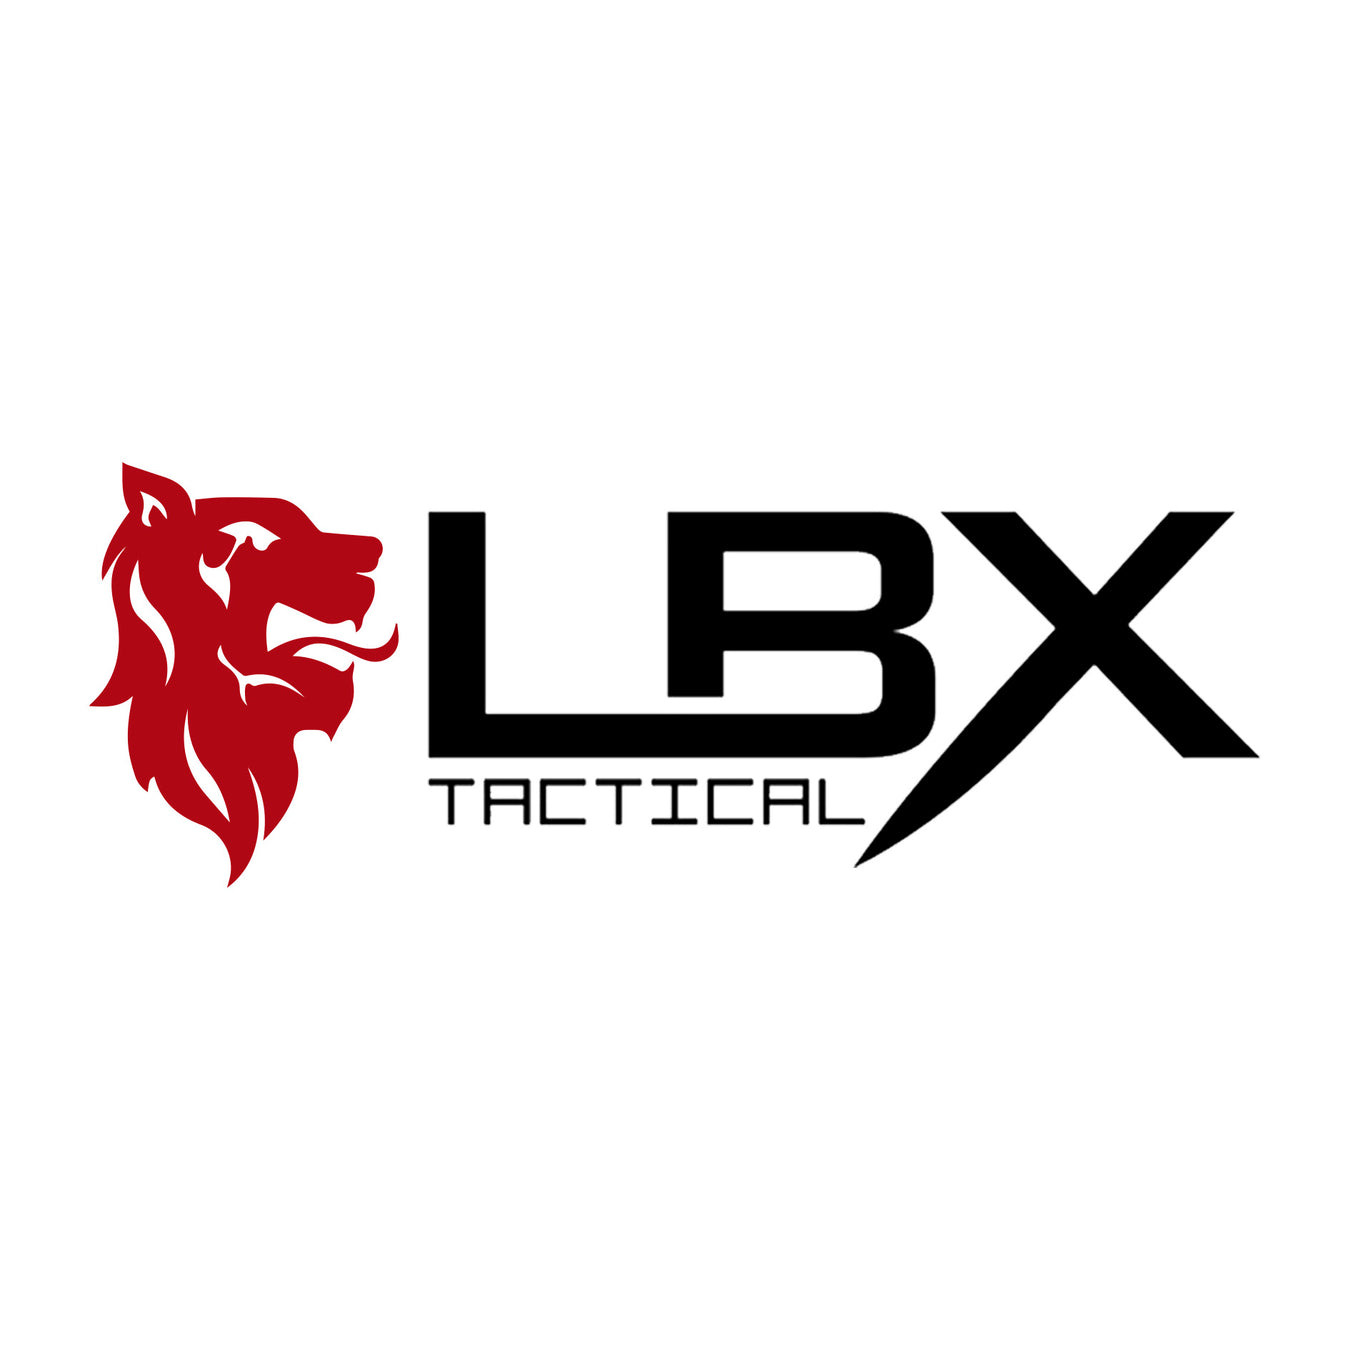 LBX Tactical